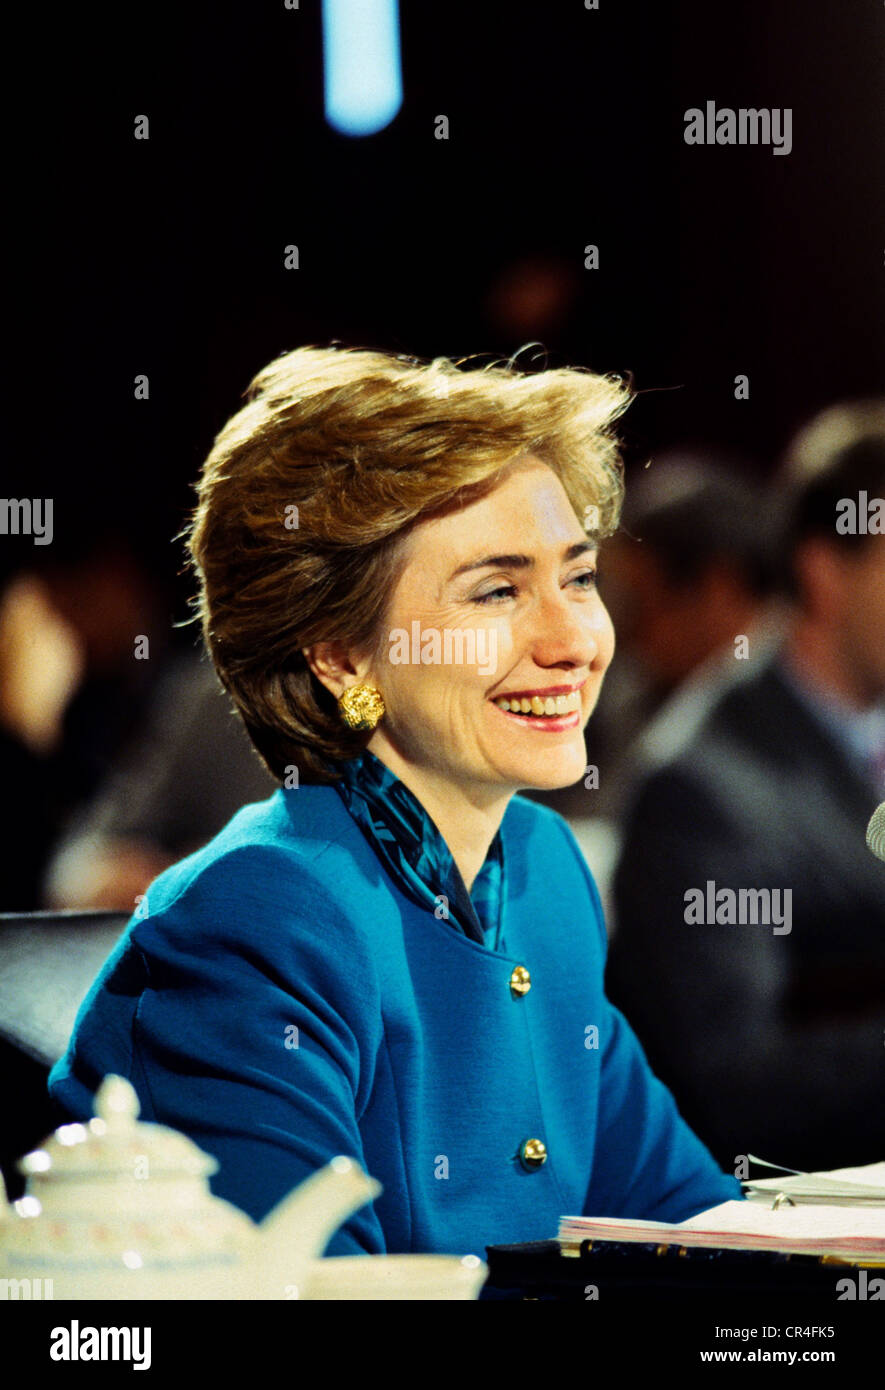 Clinton, Hillary, * 26.10.1947, político estadounidense (demócratas), Primera Dama 1993 - 2001, retrato, durante una conferencia, a principios de los años 90, Foto de stock